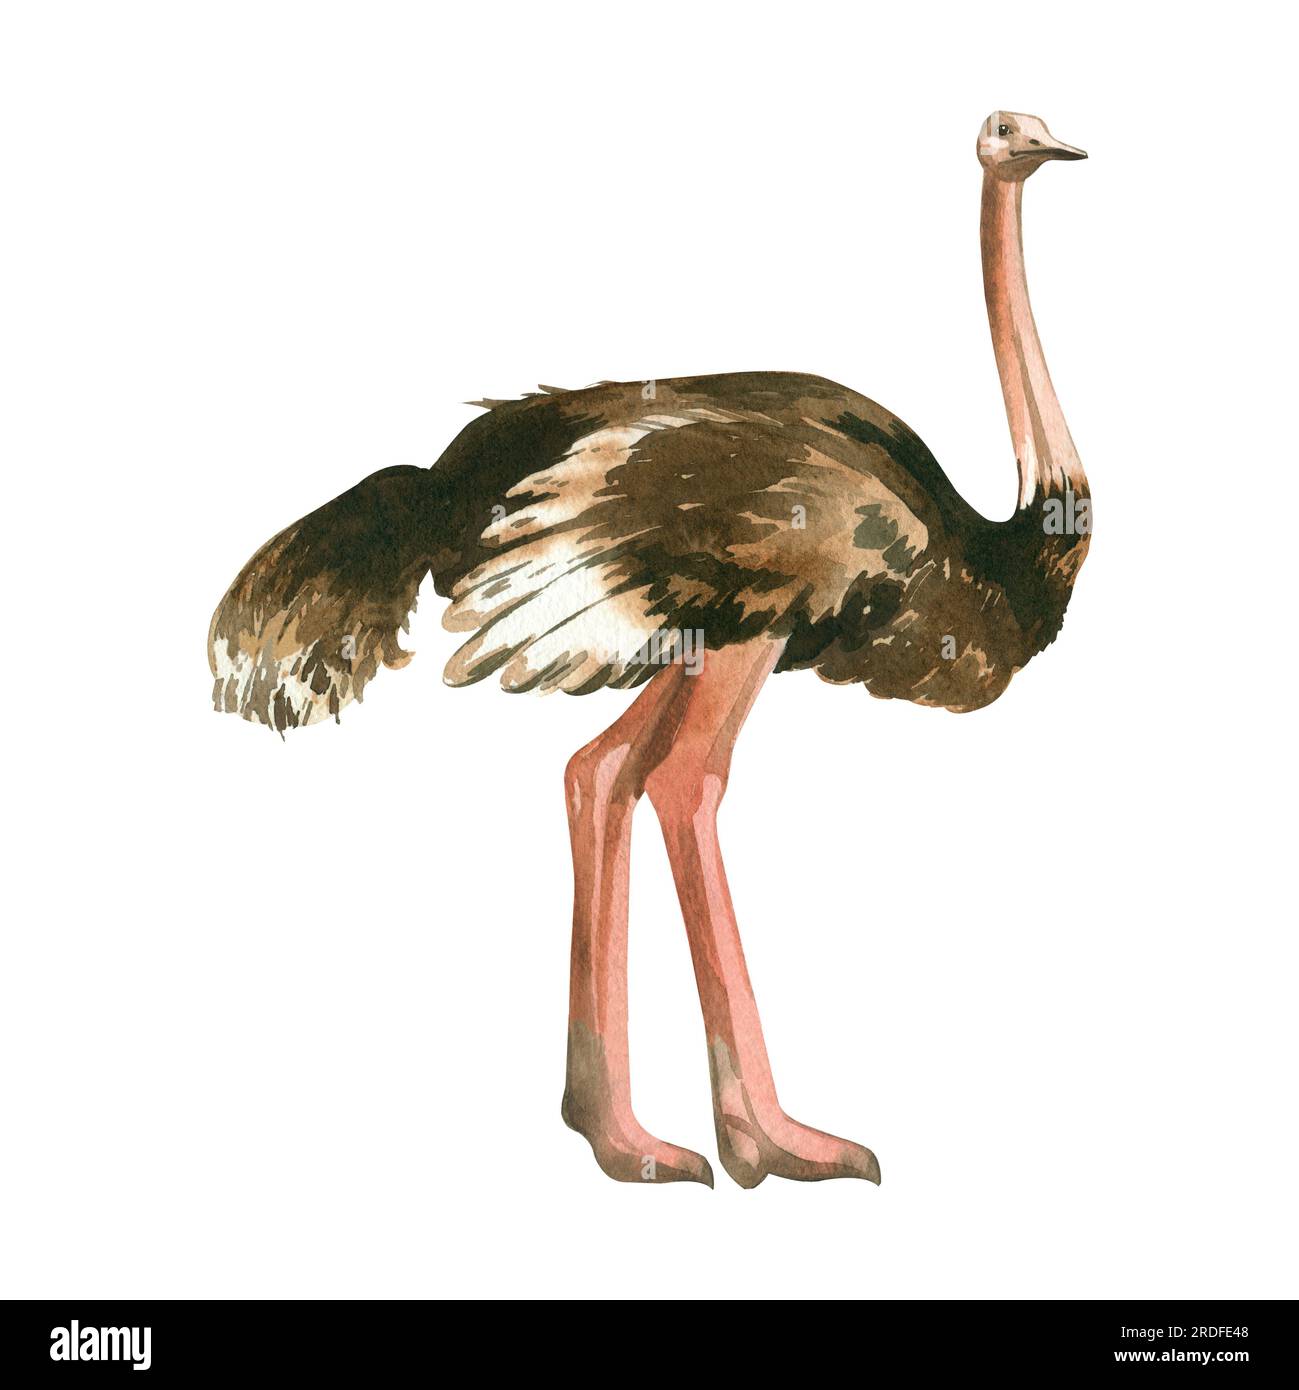 Afrikanischer Strauß. Aquarelle Zeichnung, ein Strauß mit langem Hals und langen pinkfarbenen Beinen, handgemalt in Aquarell auf weißem Hintergrund. Zum Drucken Stockfoto